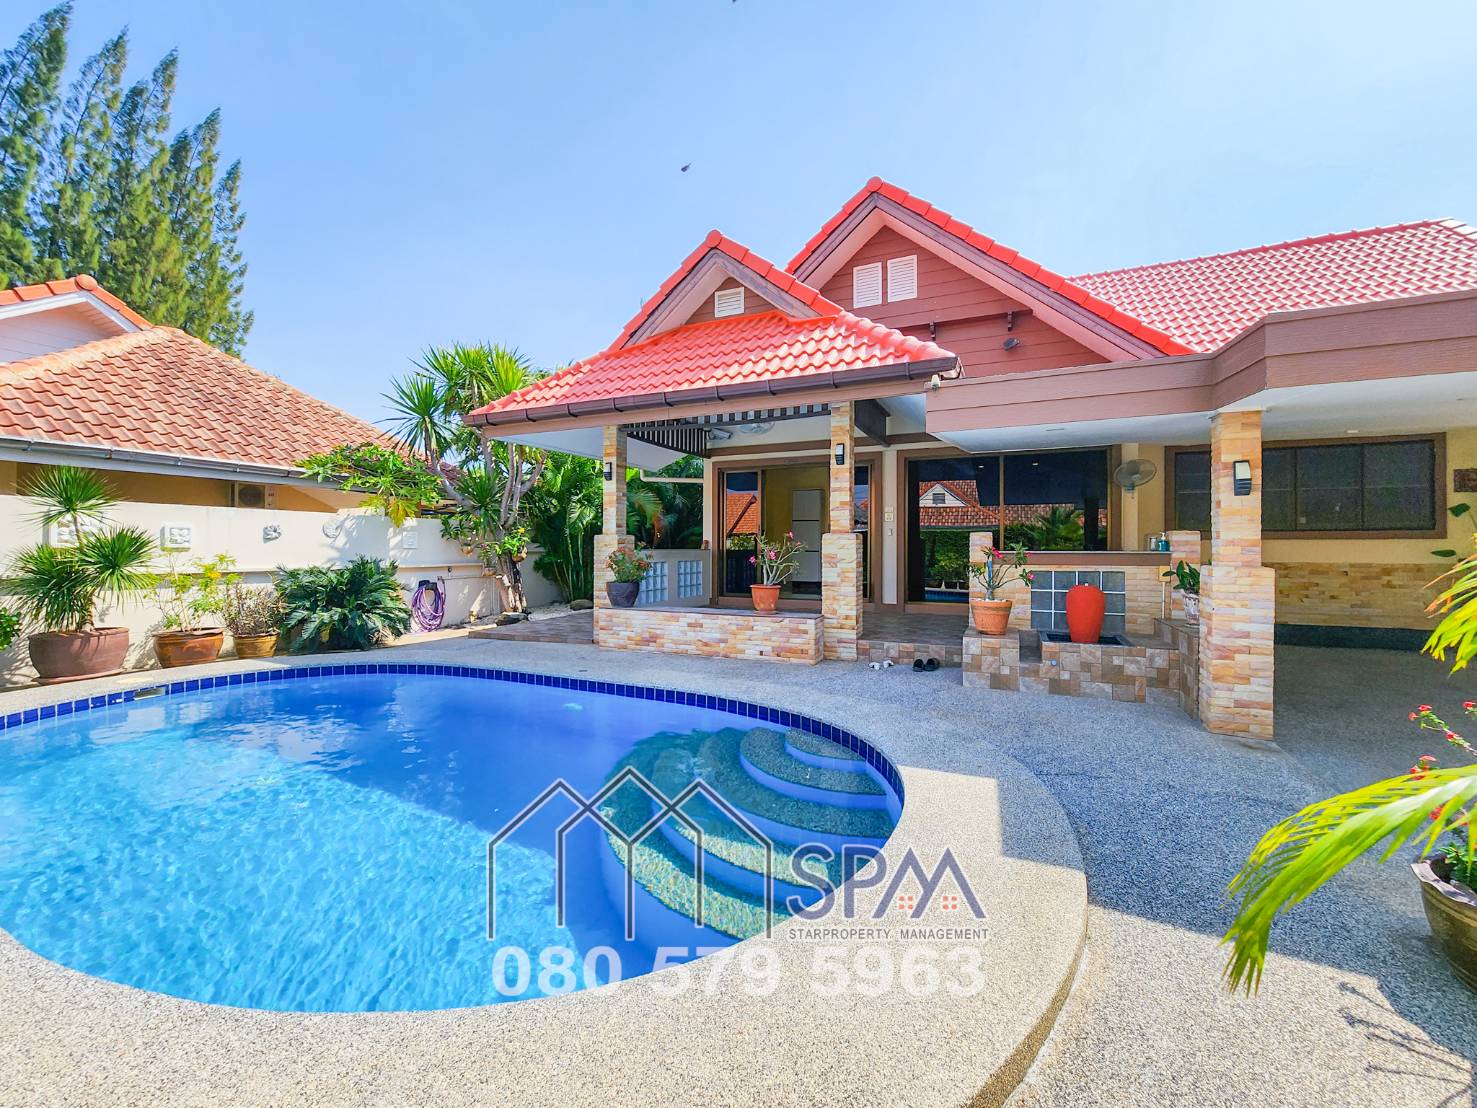 3 Bedrooms Pool villa at Chutikarn Hua Hin Soi 58 for sale, price 4.8 Million Baht